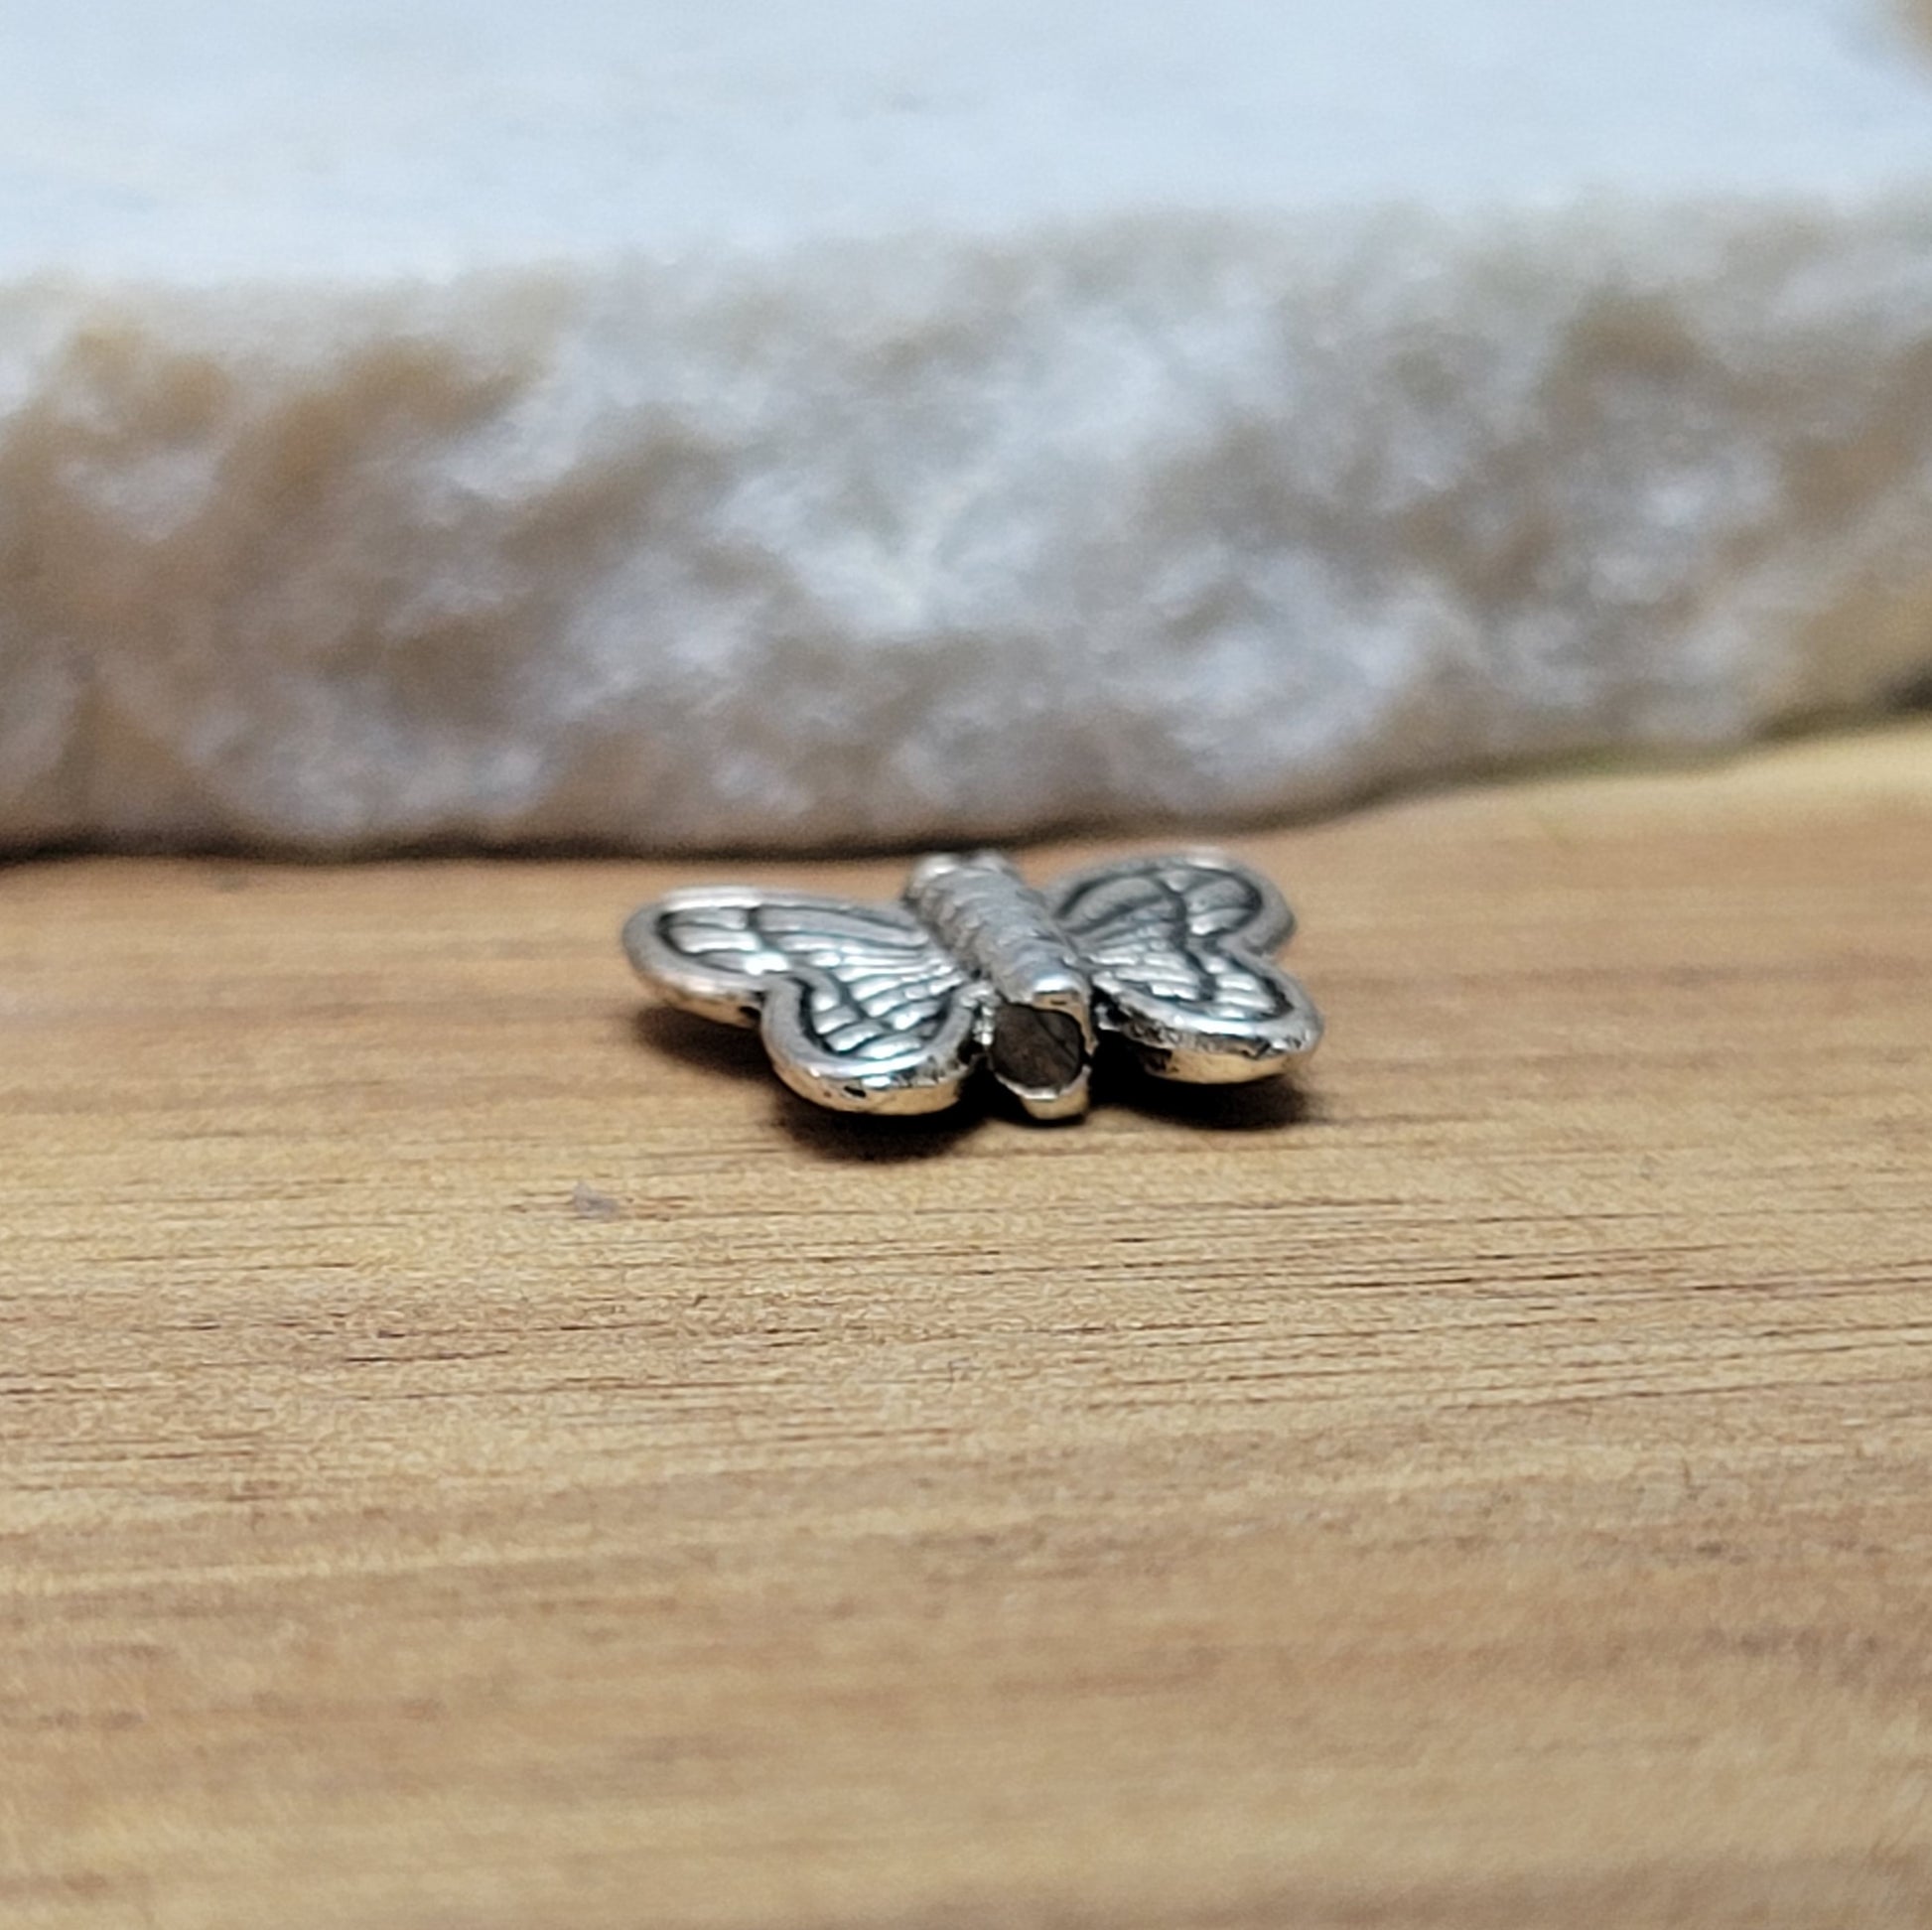 Eine Packung mit 5 Metallperlen in Form eines Schmetterlings.  Die Perlen sind beidseitig geprägt, antik silberfarbig und haben eine hübsches Antikfinish, was für einen tollen Vintage-Effekt sorgt.  Das Fädelloch verläuft von oben nach unten durch den Schmetterling. 